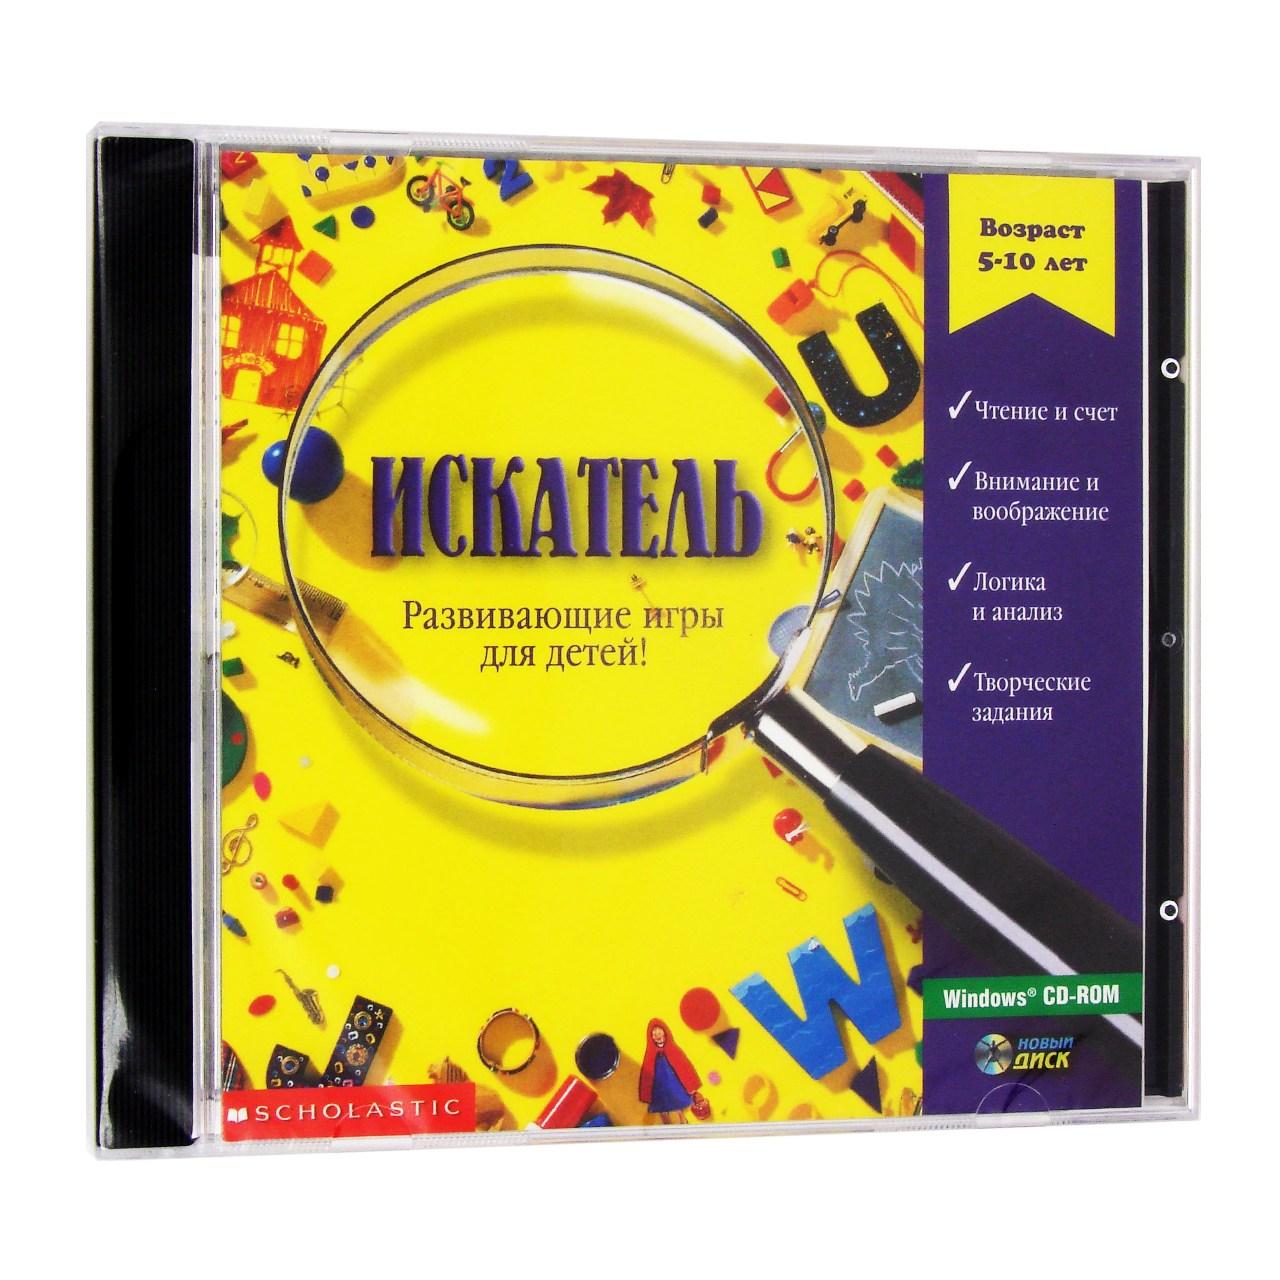 Компьютерный компакт-диск Искатель (ПК), фирма "Новый диск", 1CD